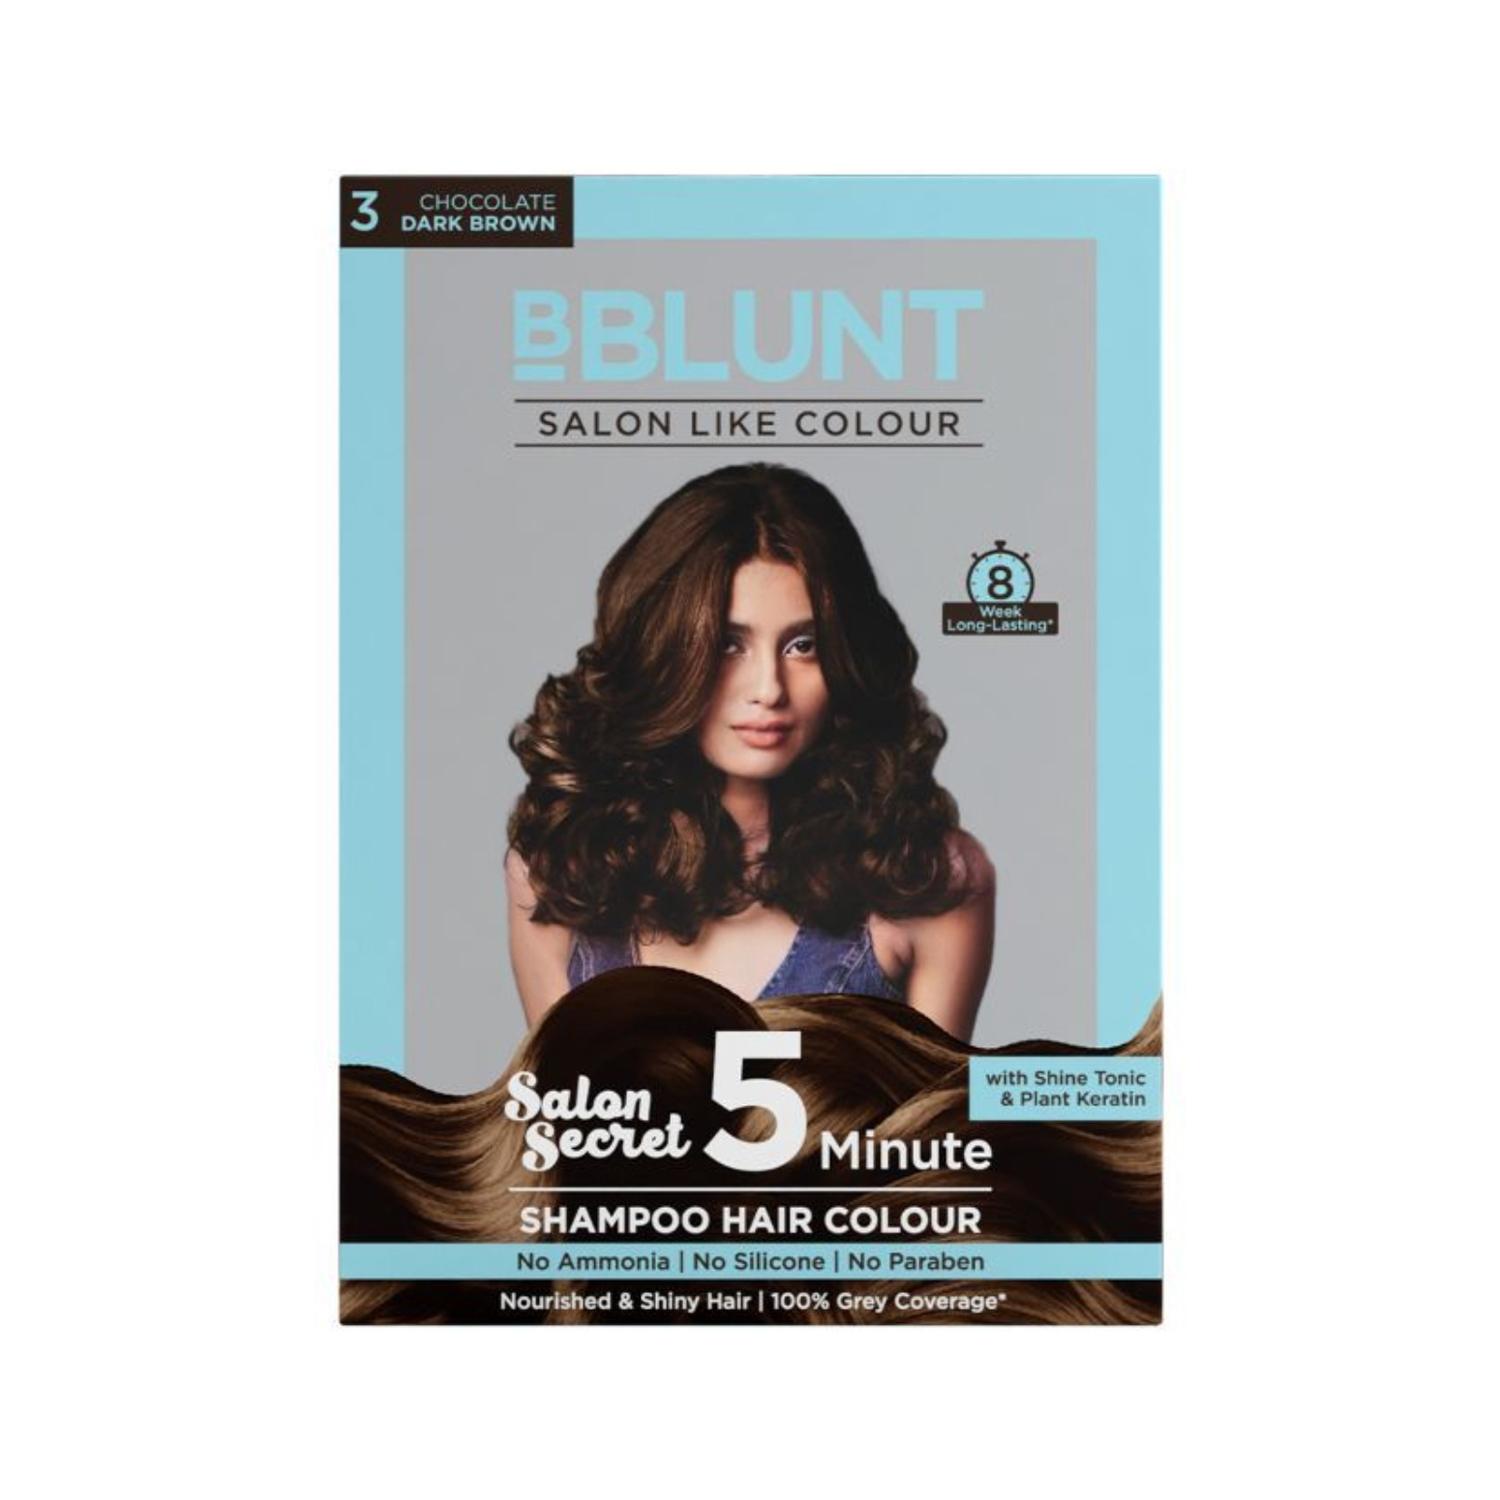 bblunt 5 minute shampoo hair colour - 03 chocolate dark brown (5pcs)